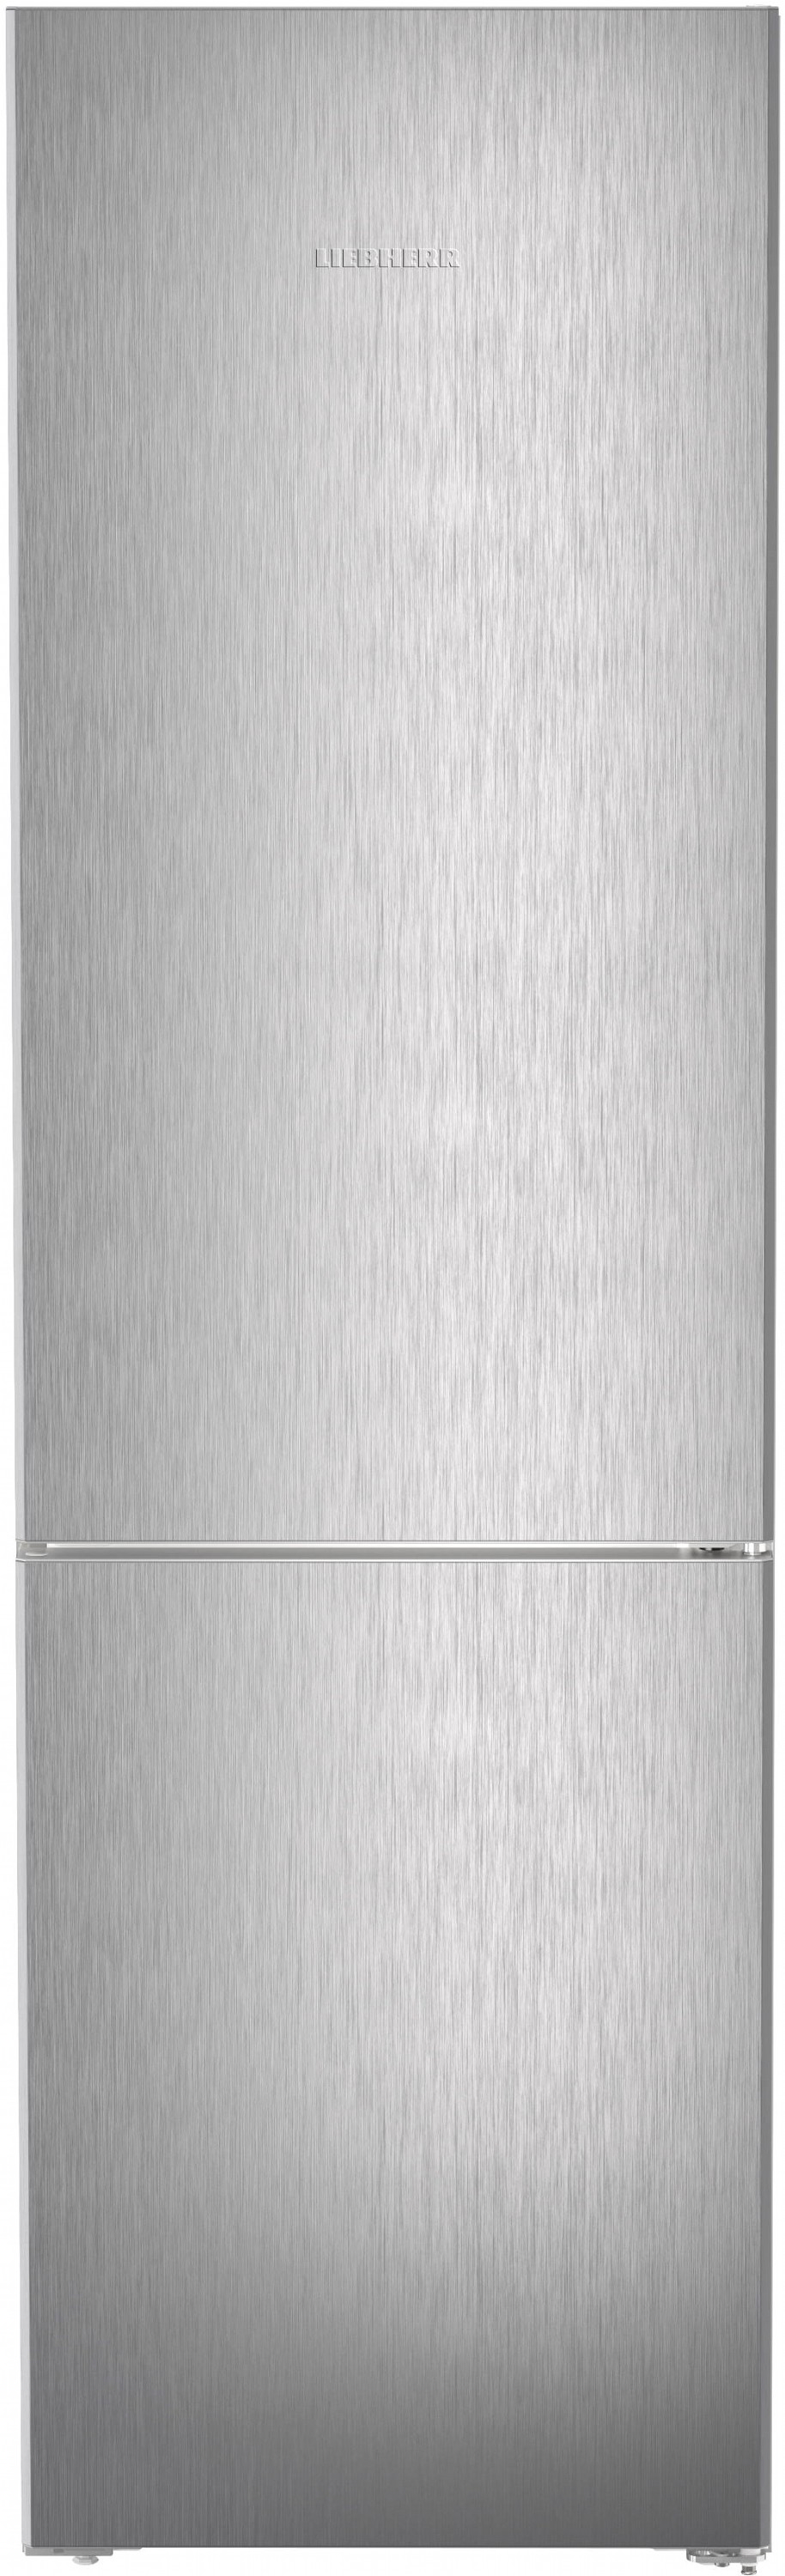 Холодильник Liebherr CNSFD 5703 в Львове